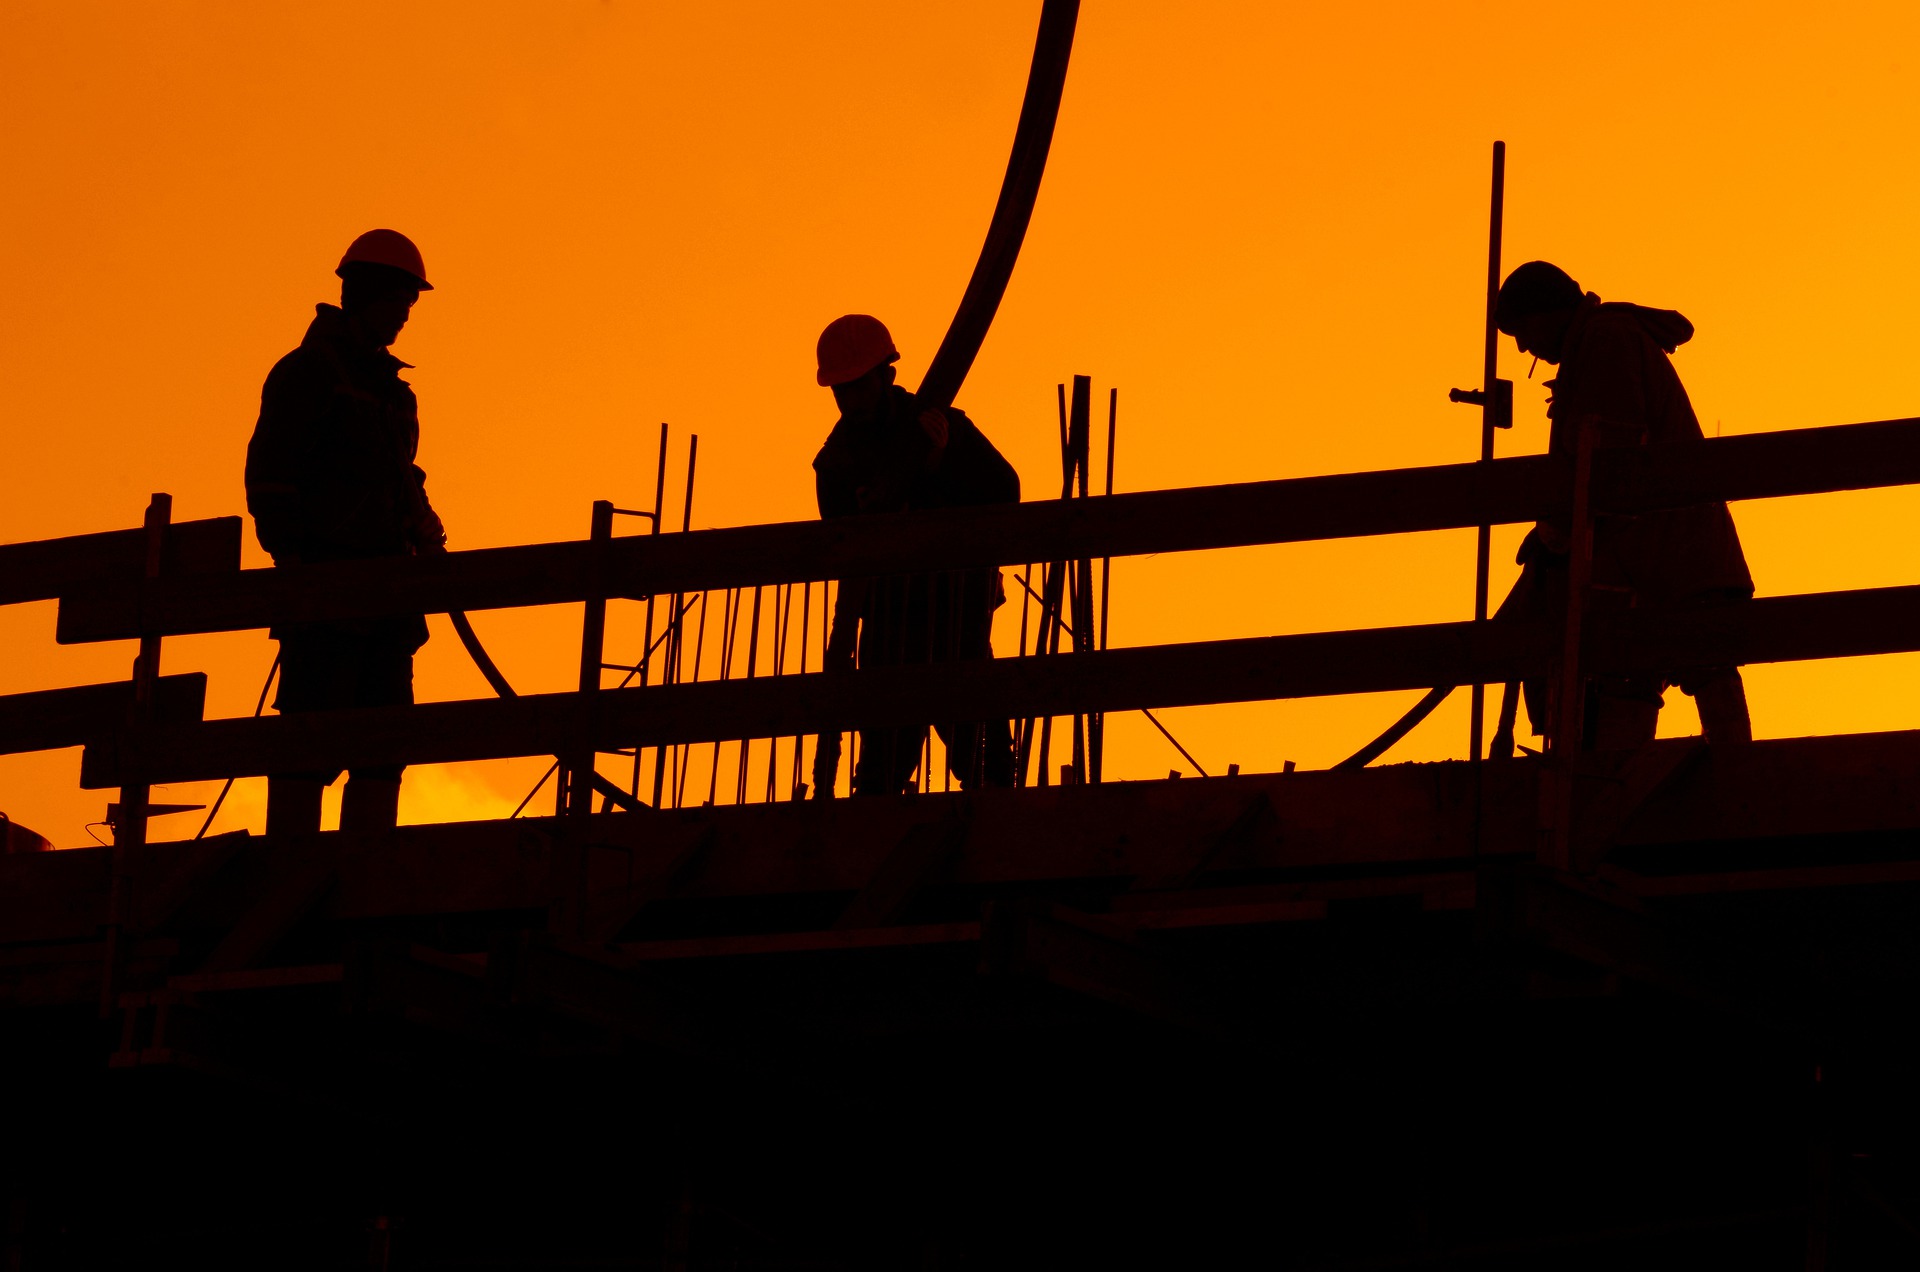 ÉVOSZ: idén az építőipari vállalkozások 45 százaléka számít árbevétele növekedésére, jövőre már csak 14 százalékuk